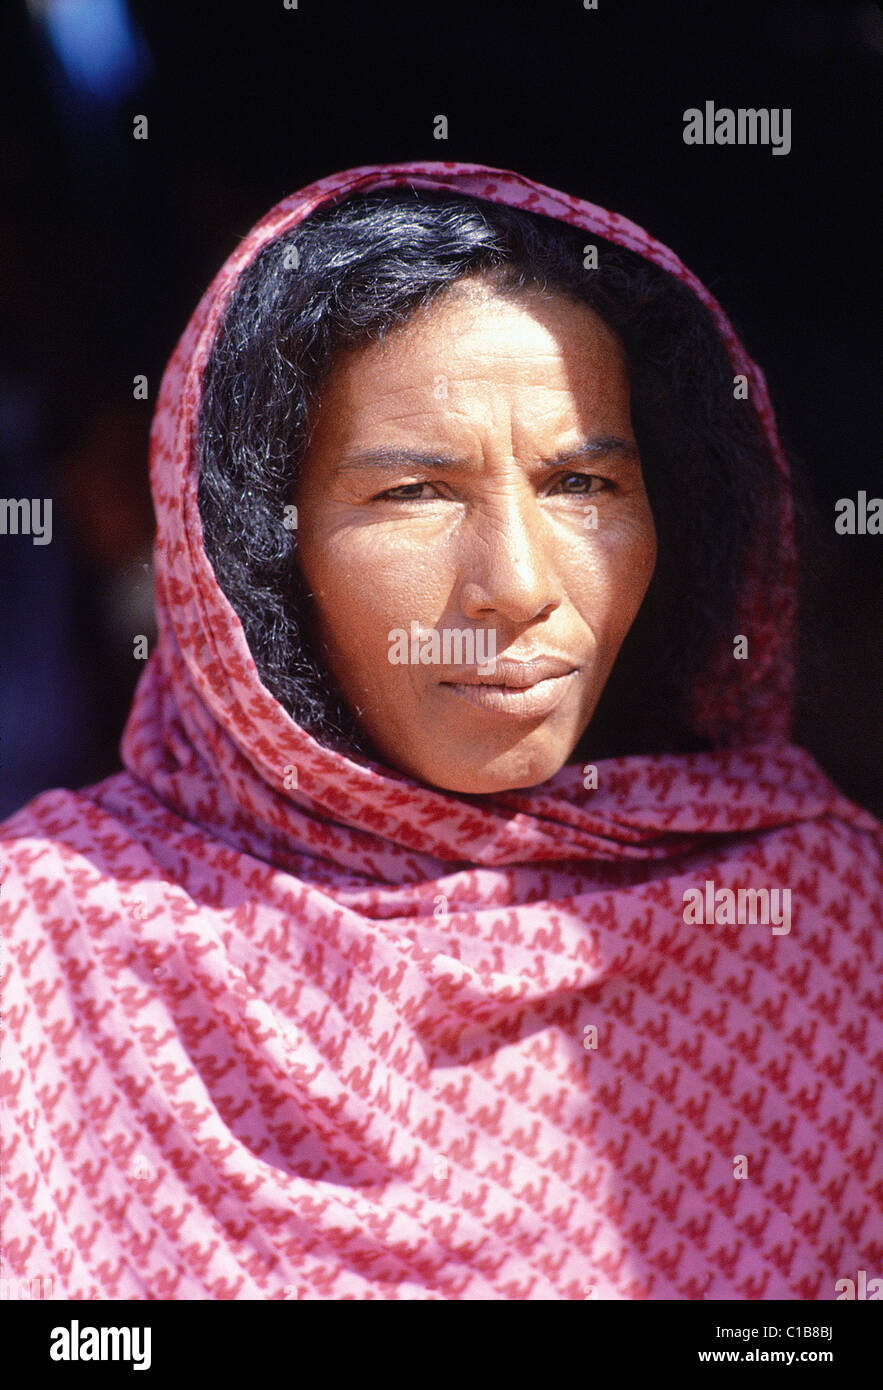 Mauritius, Nouakchott, woman portrait Stock Photo